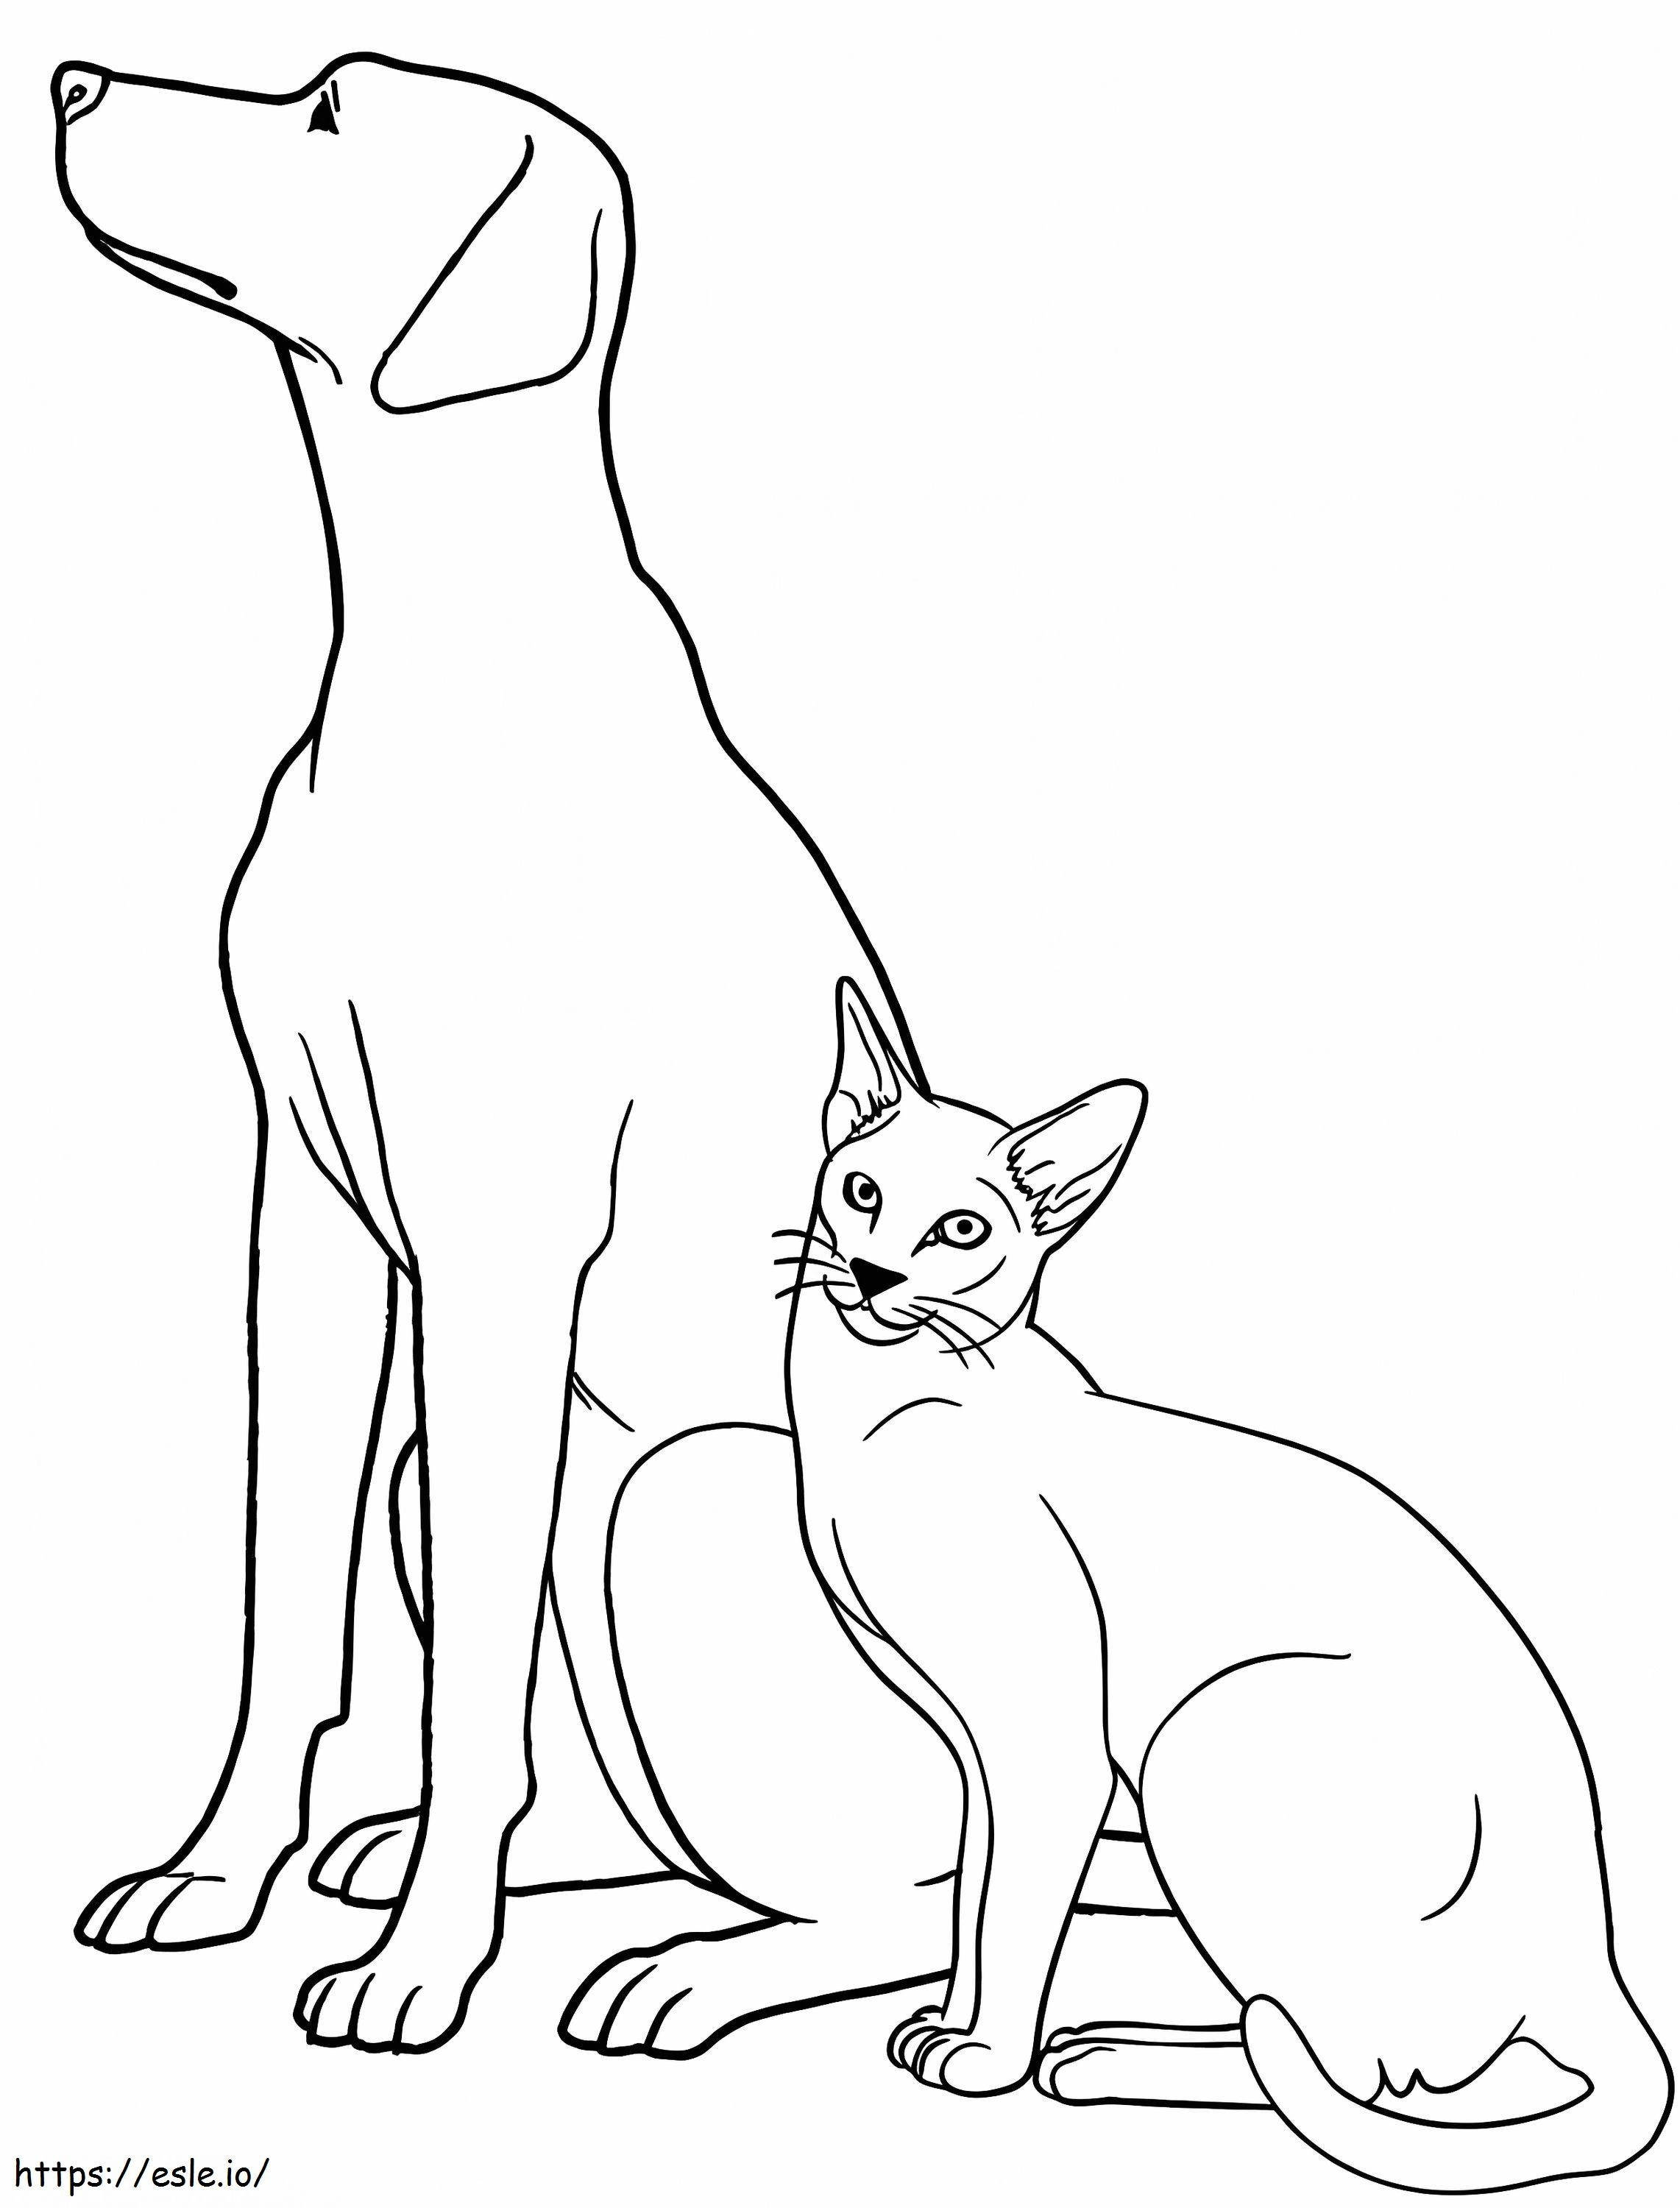 Coloriage Chien et chat pour les enfants à imprimer dessin